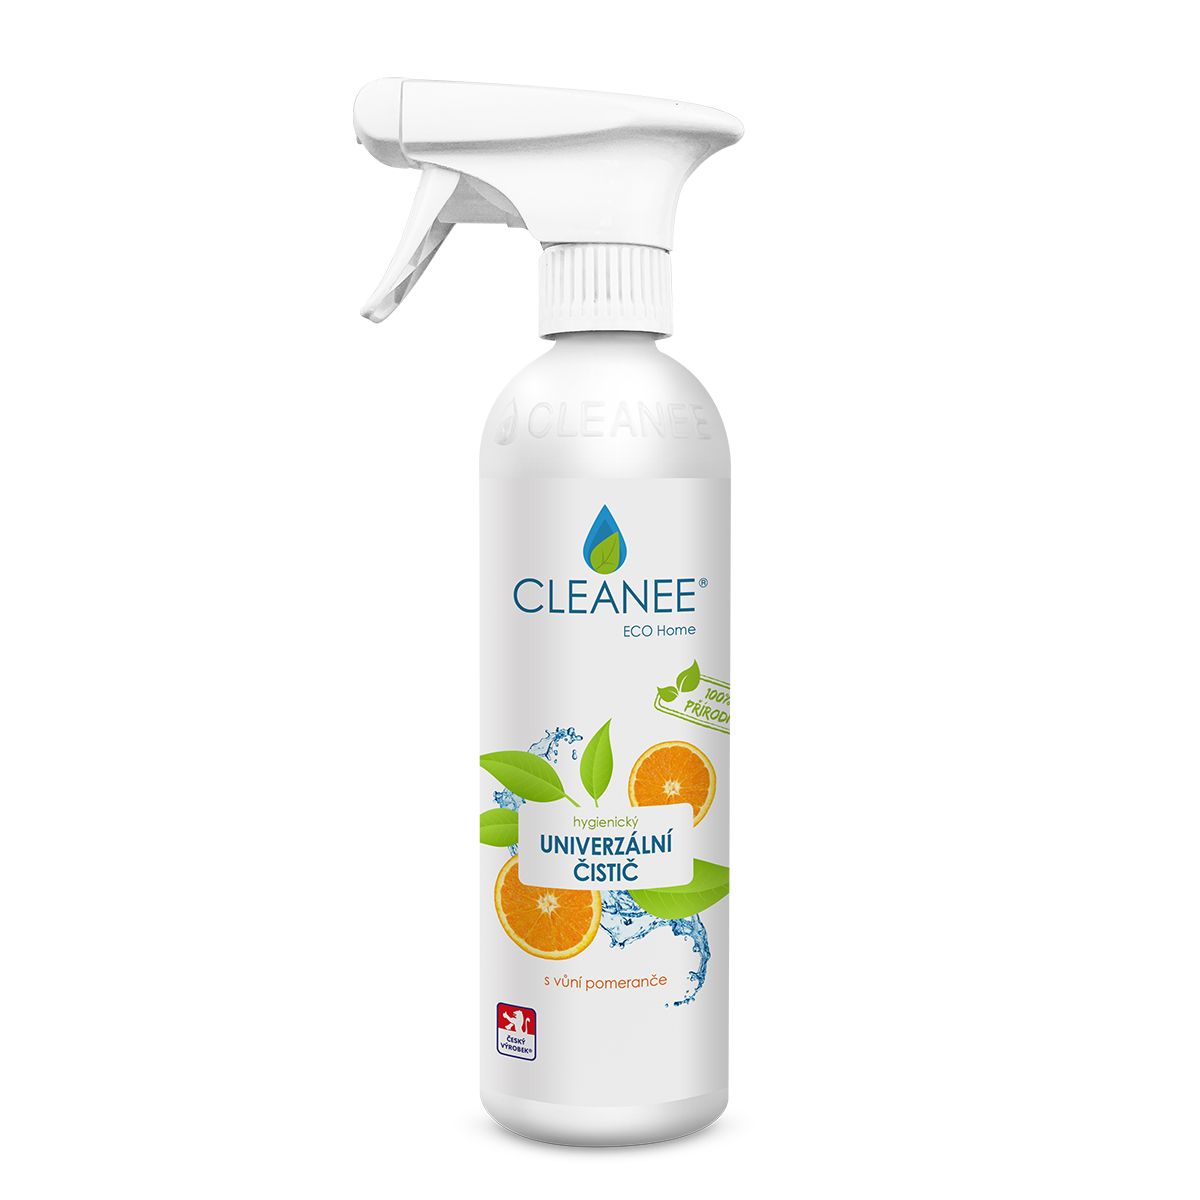 CLEANEE ECO Home Hygienický čistič univerzální s vůní pomeranče 500 ml CLEANEE